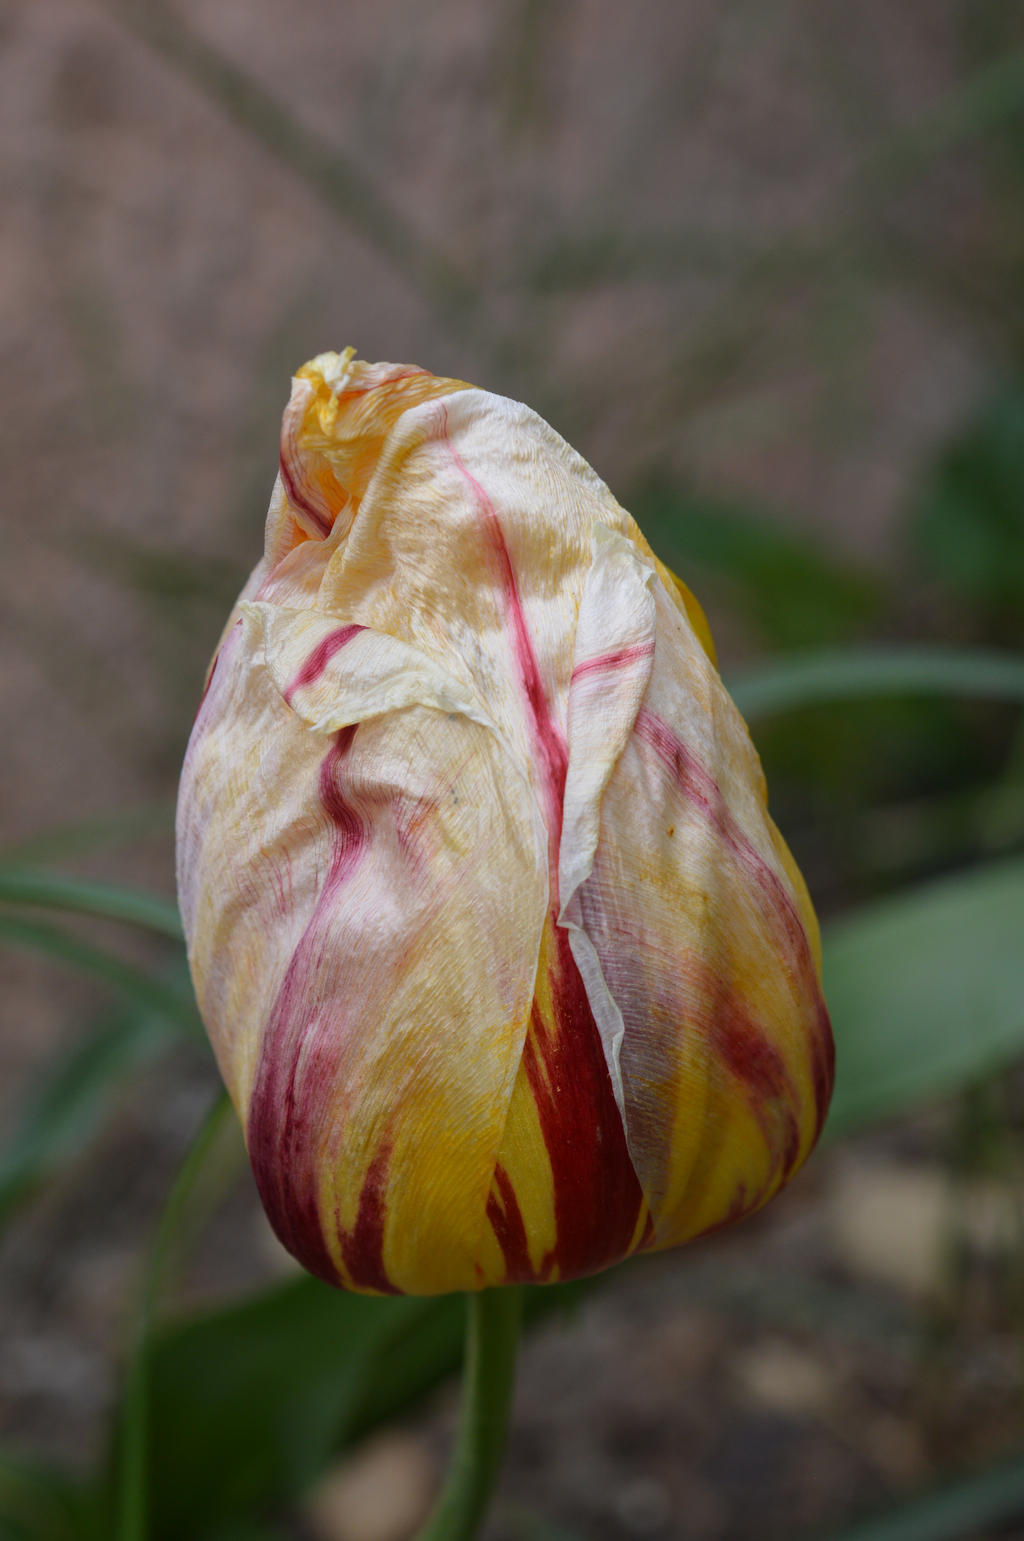 End of blooming of Tulip Breaking Virus